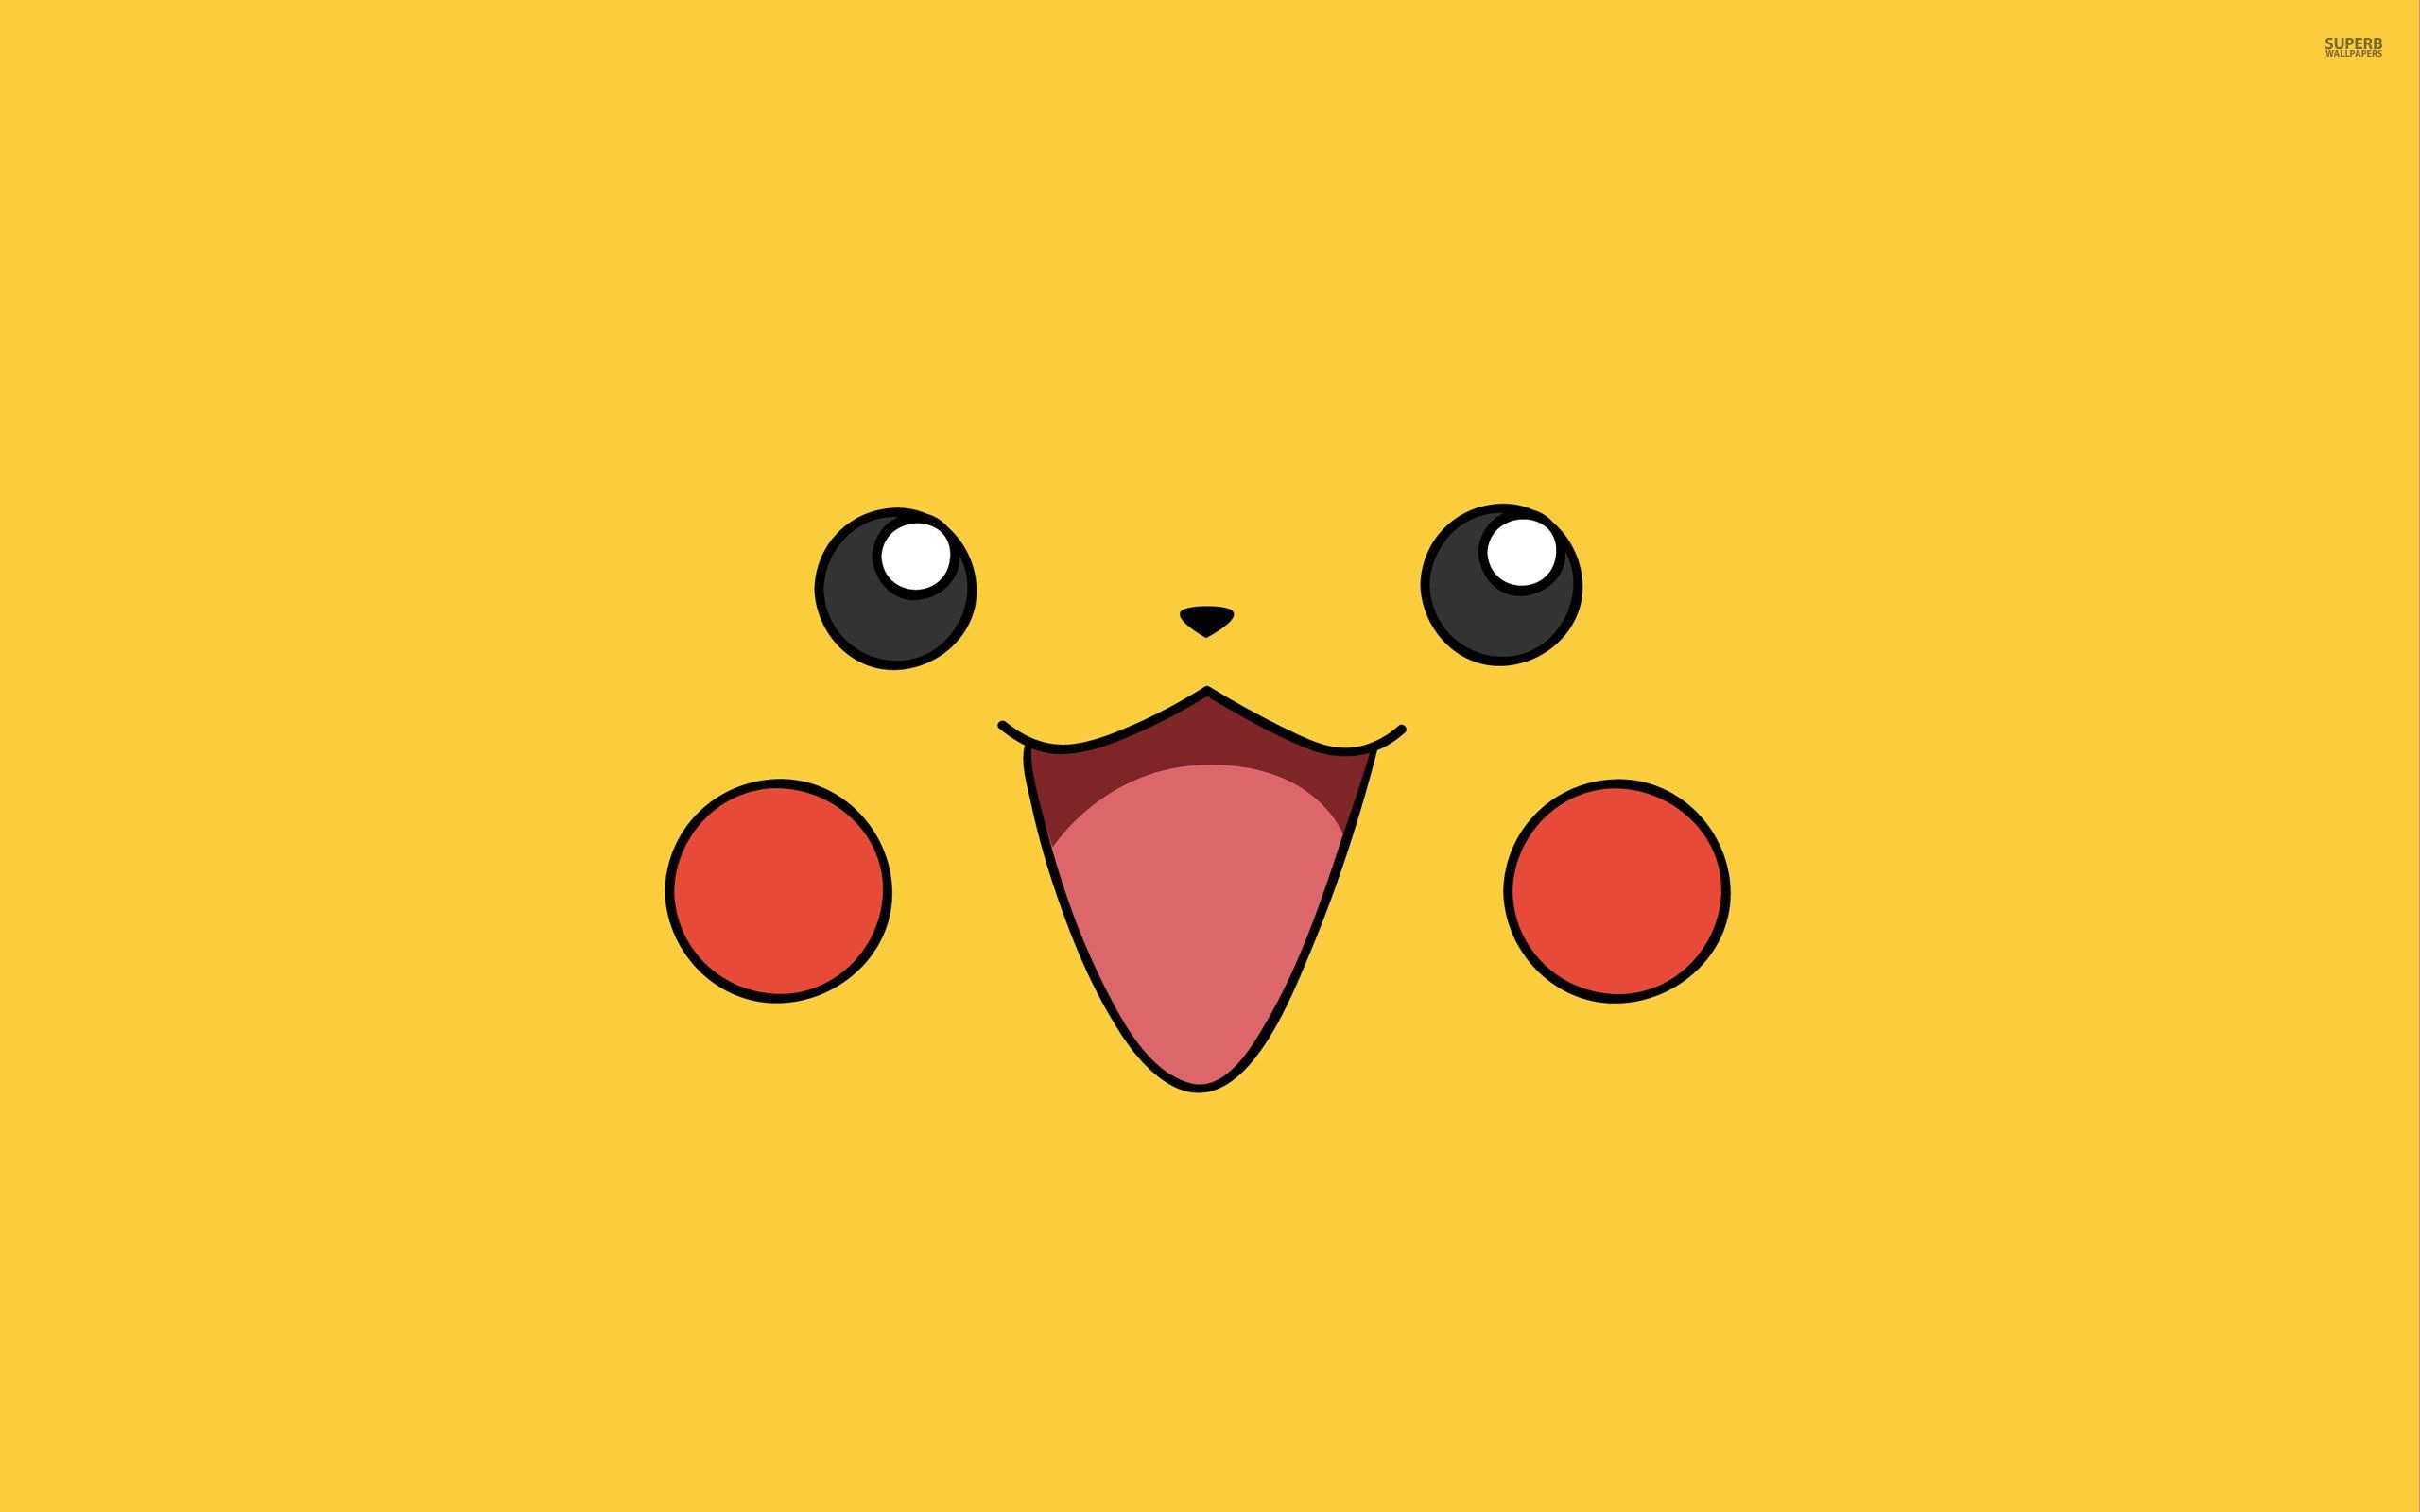 Pikachu HD Wallpaper